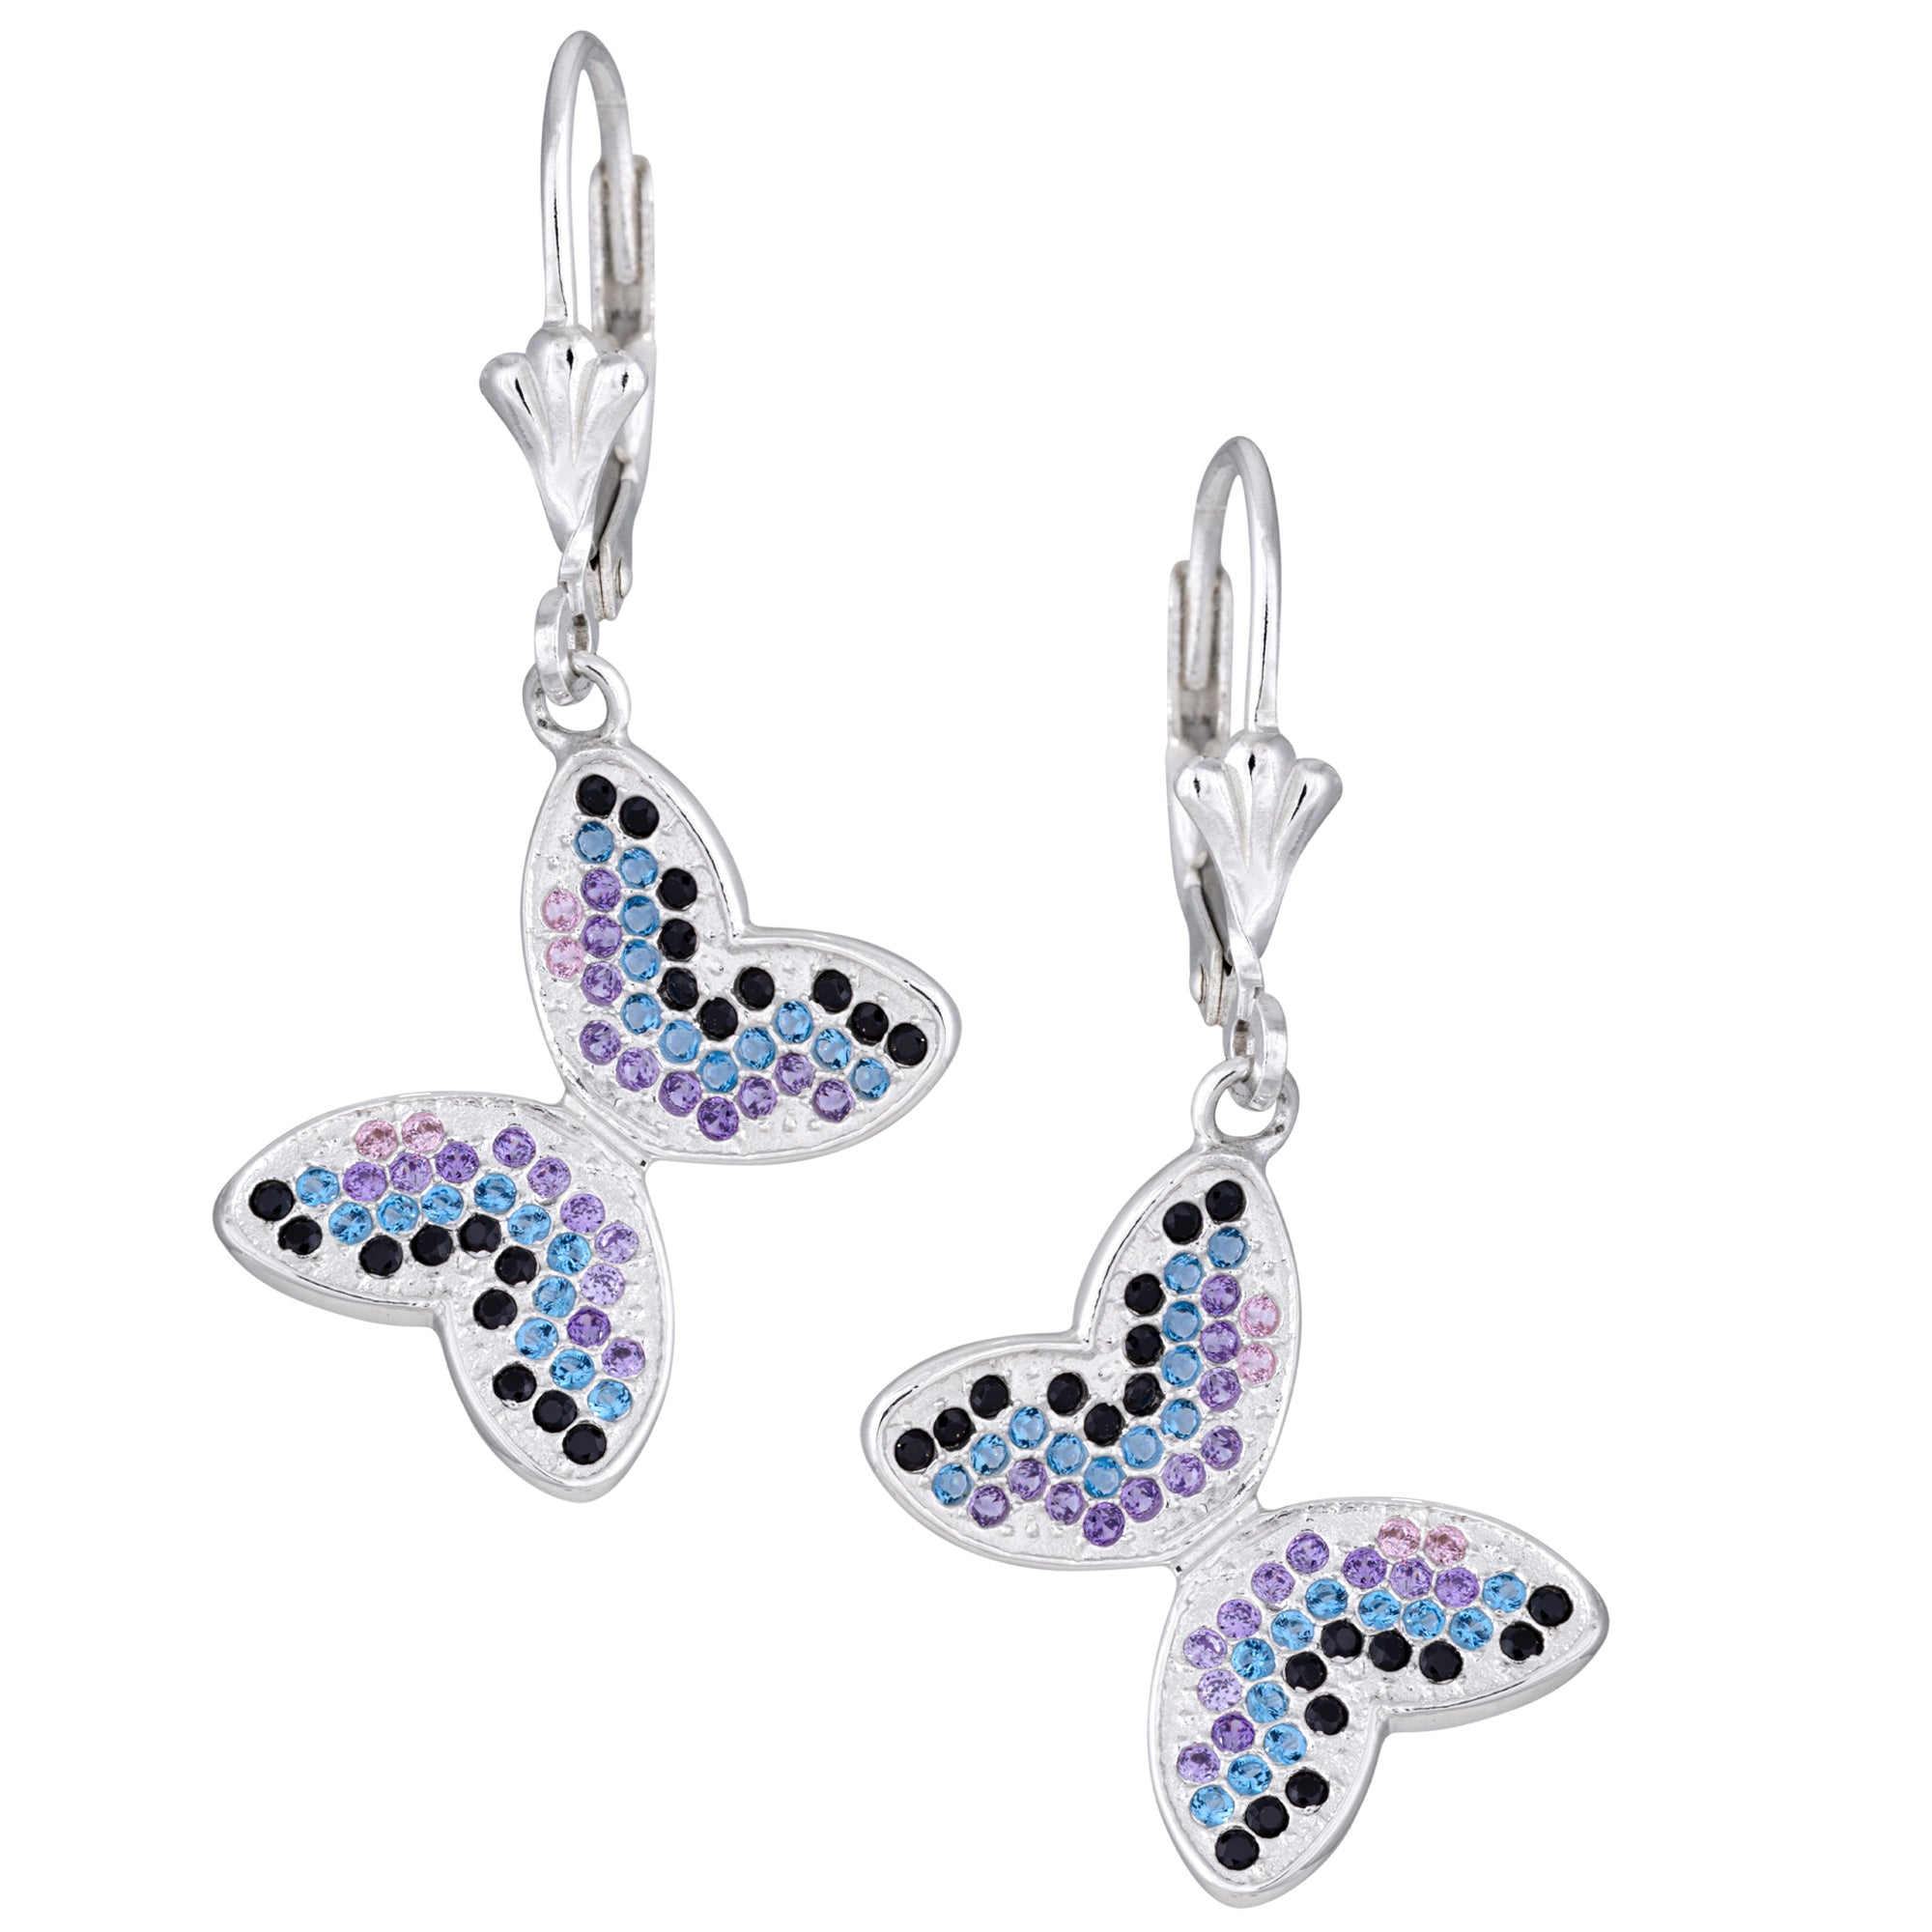 Fluttering Friends Sterling & Crystal Earrings - Butterfly